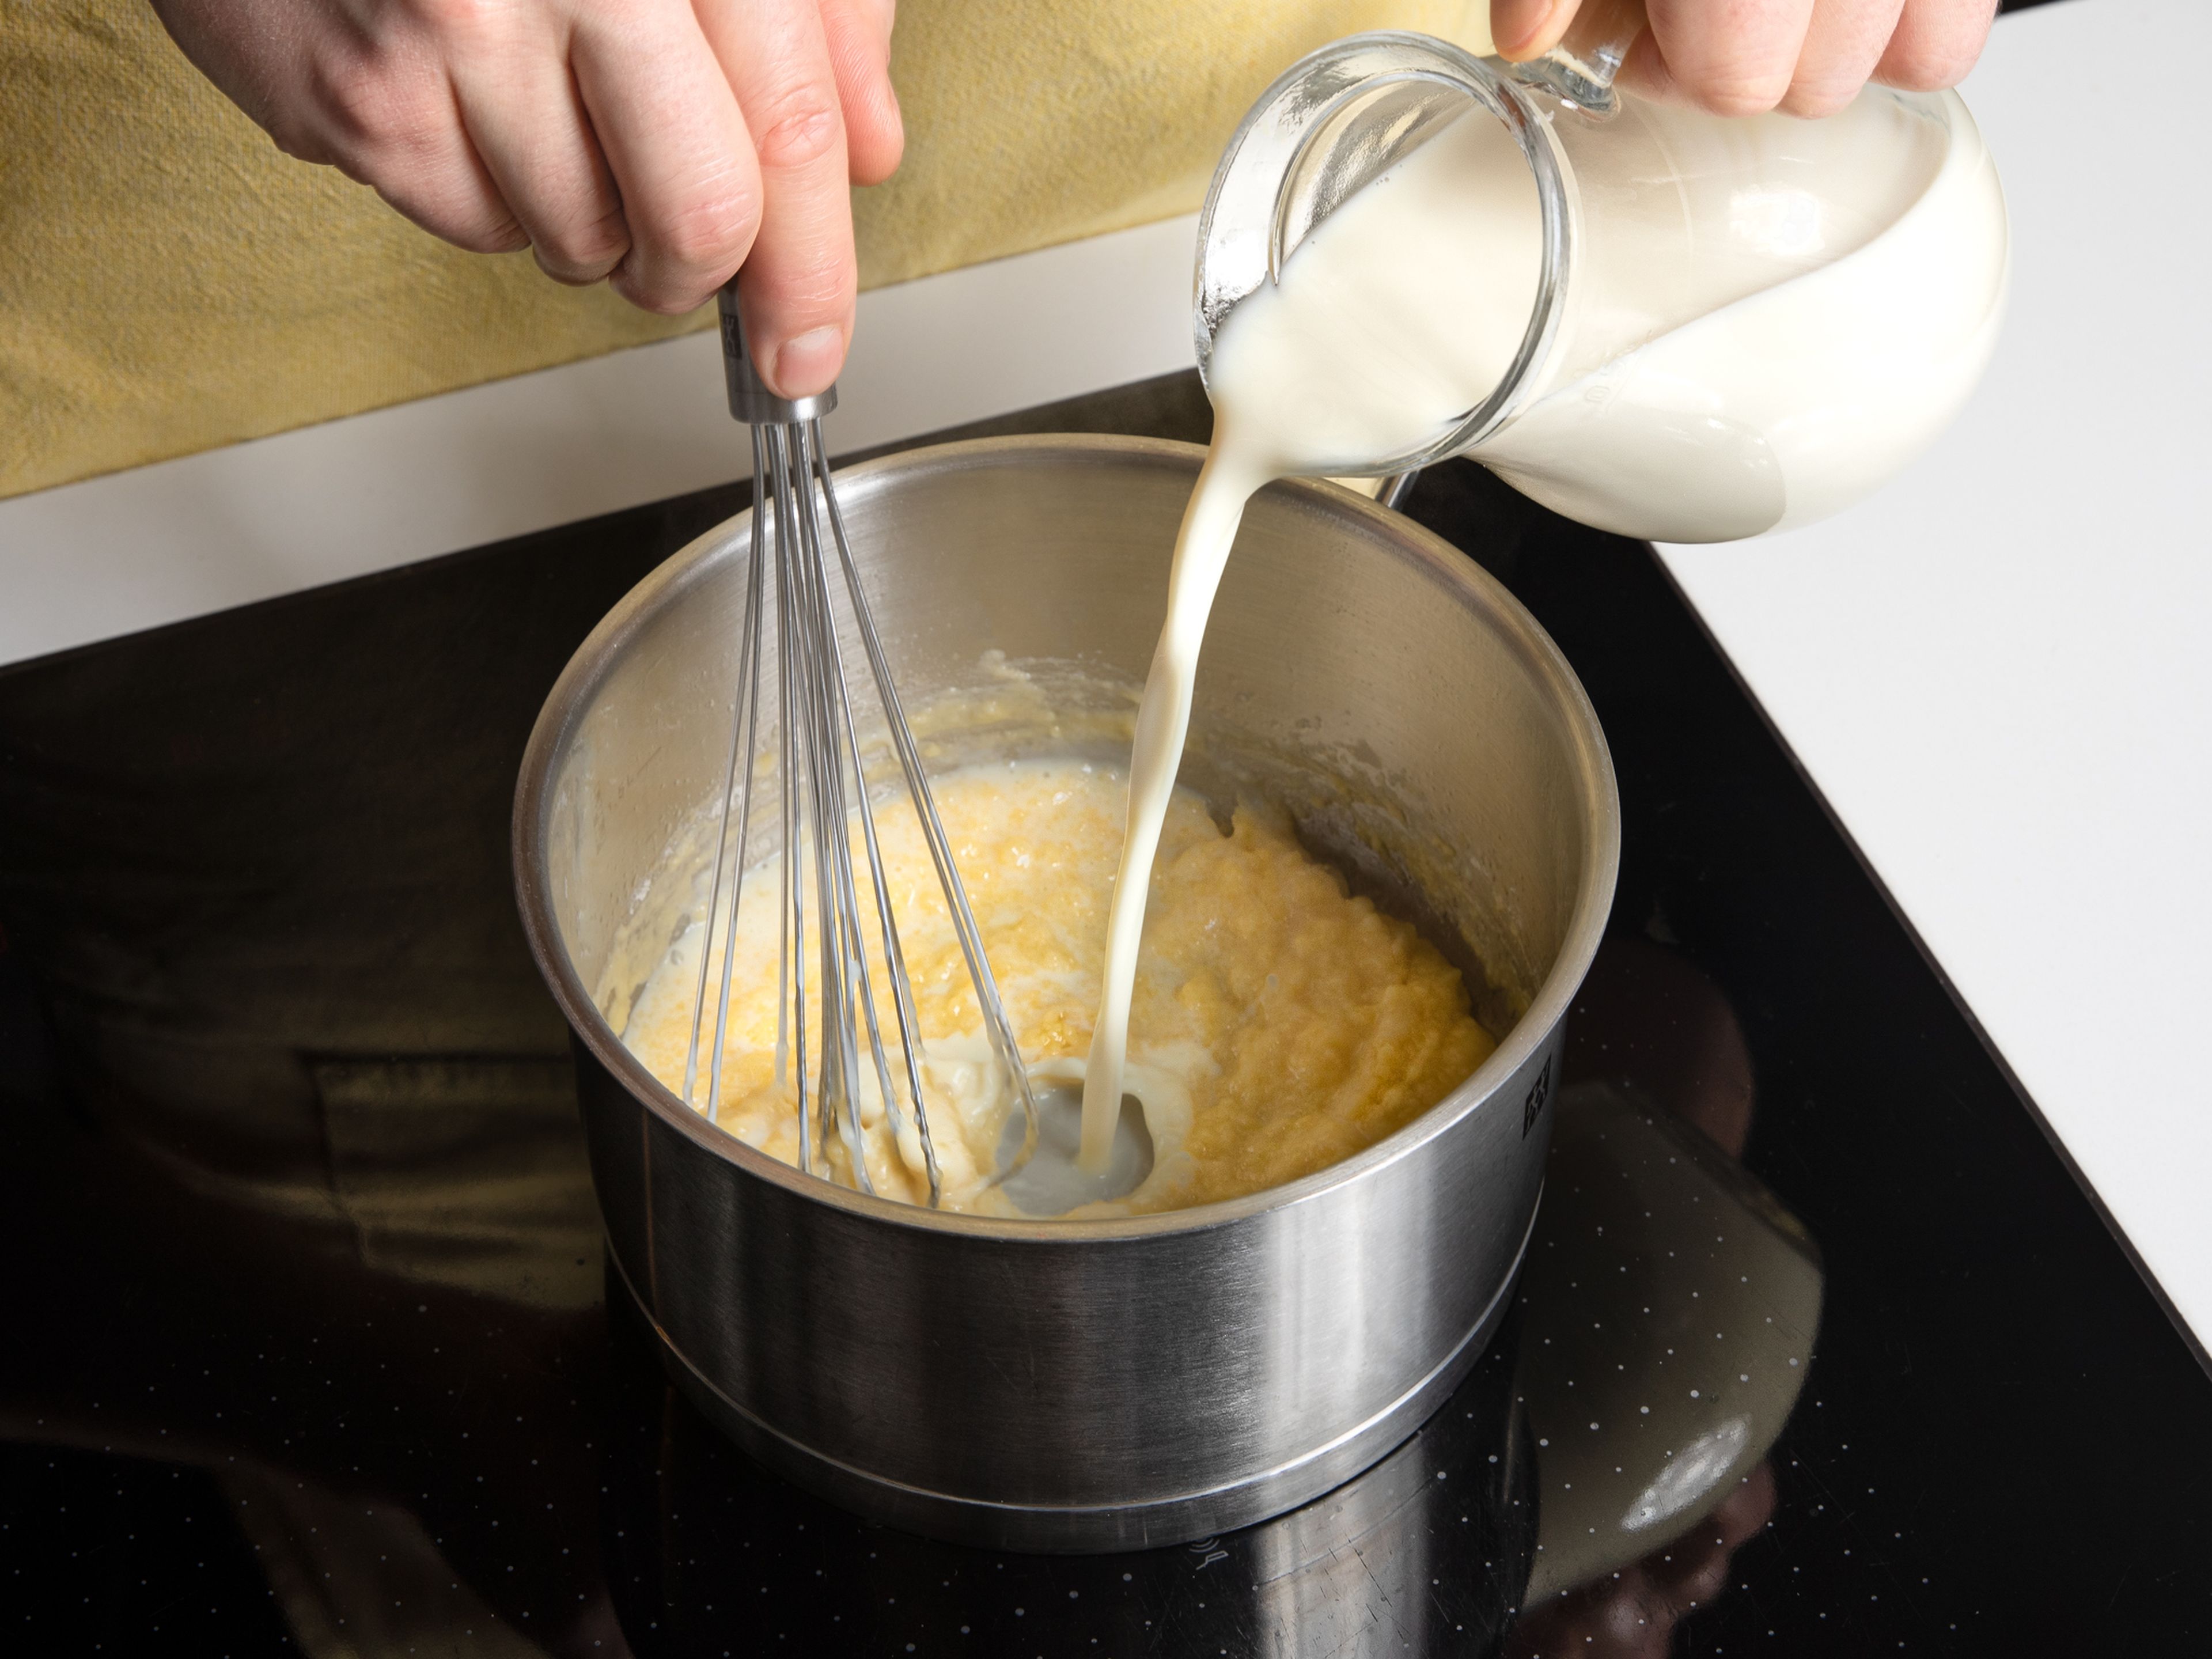 Für die vegane Béchamelsoße Margarine in einem Topf bei mittlerer Hitze zerlassen. Mehl einrühren,
dann langsam die warme Sojamilch unter gleichmäßigem Rühren eingießen.